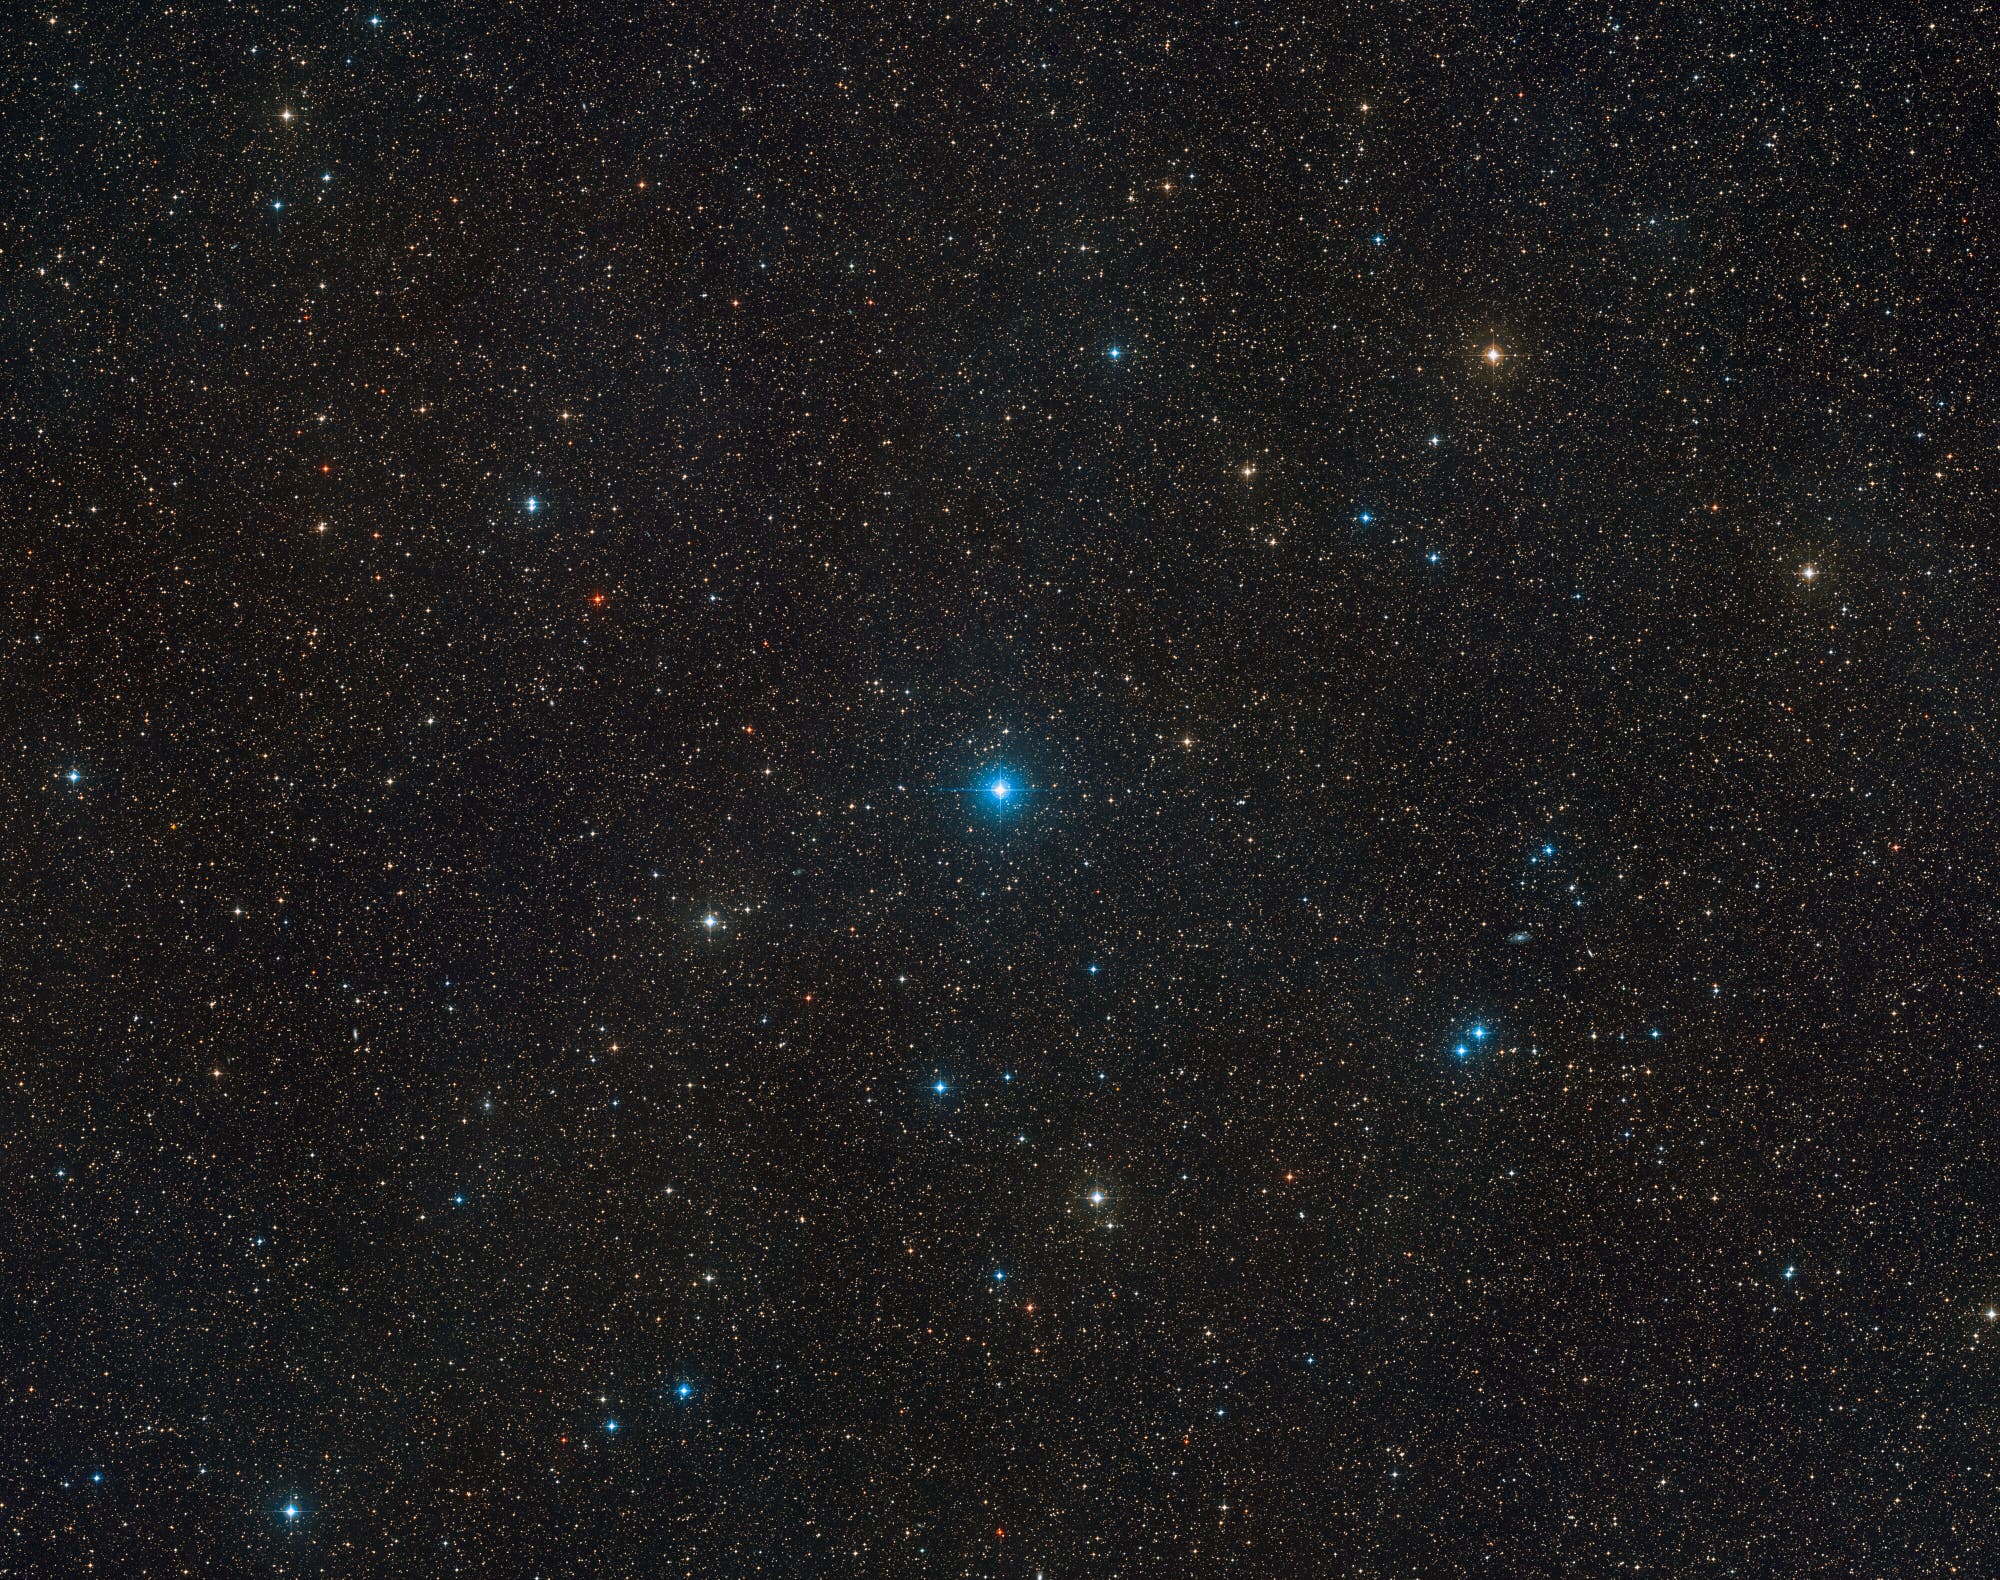 Sternsystem HR 6819 